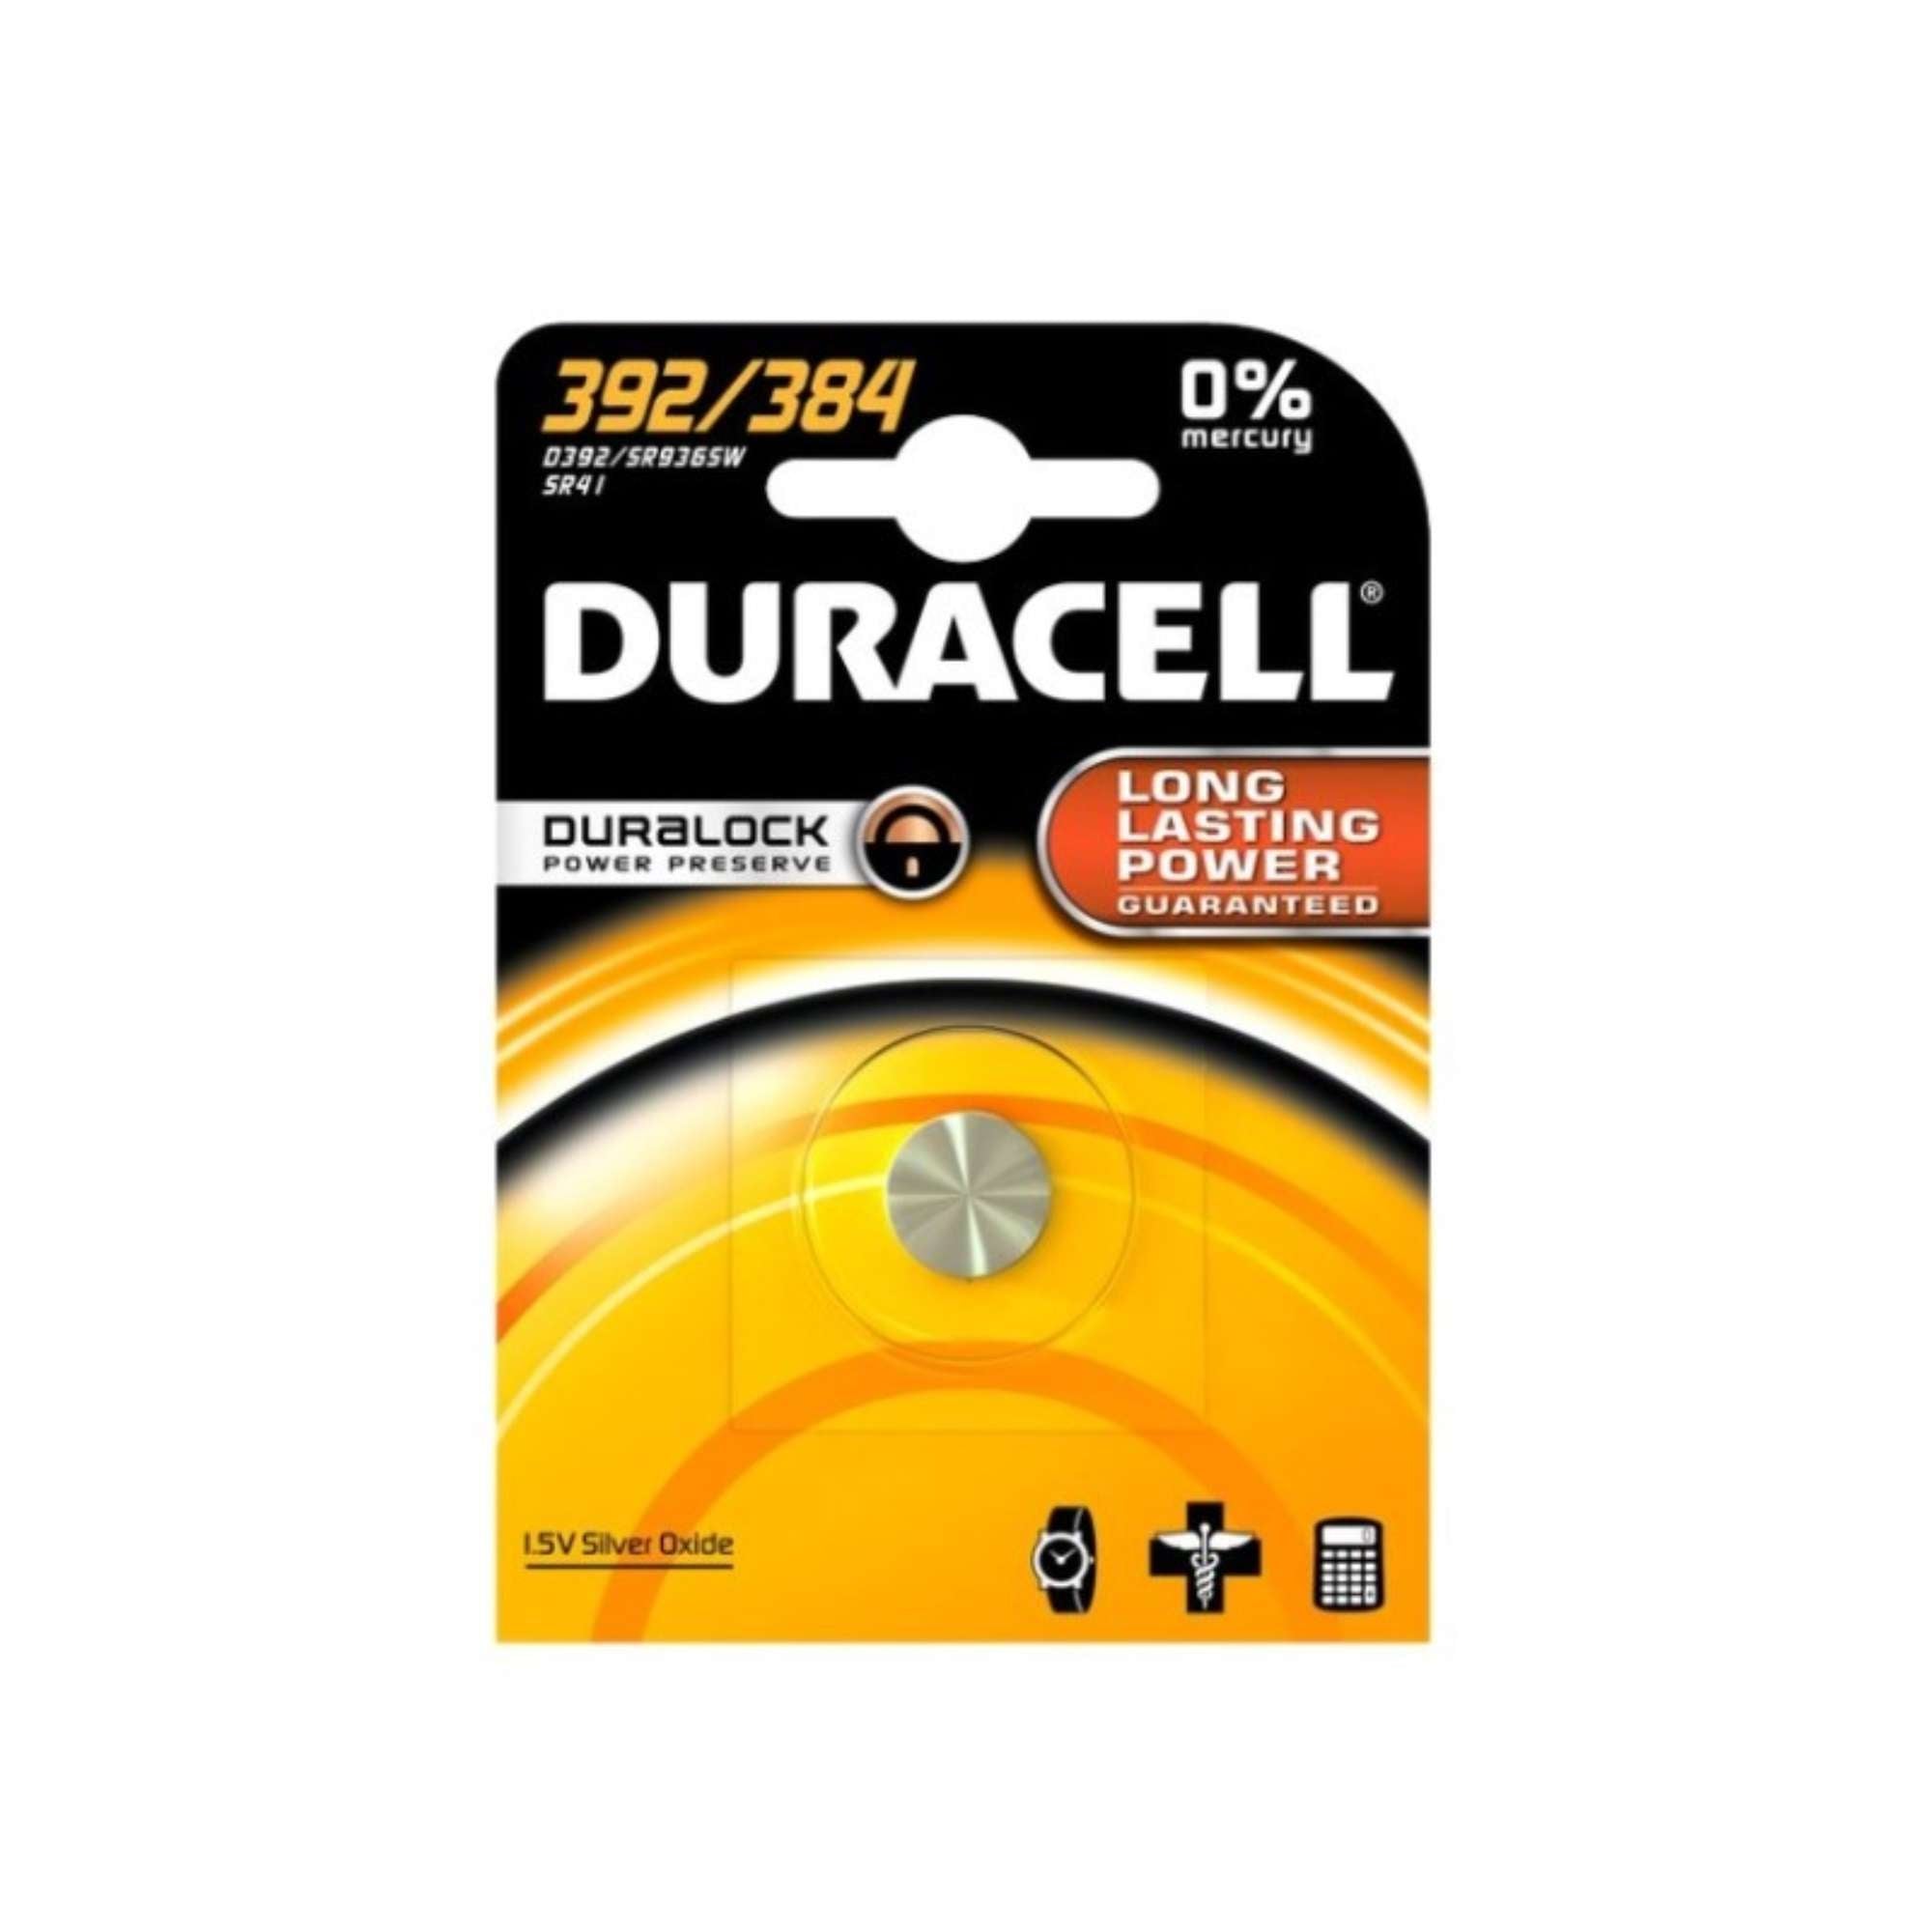 SR41 1.5V Pellet Battery - DURACELL 392/384 DU87